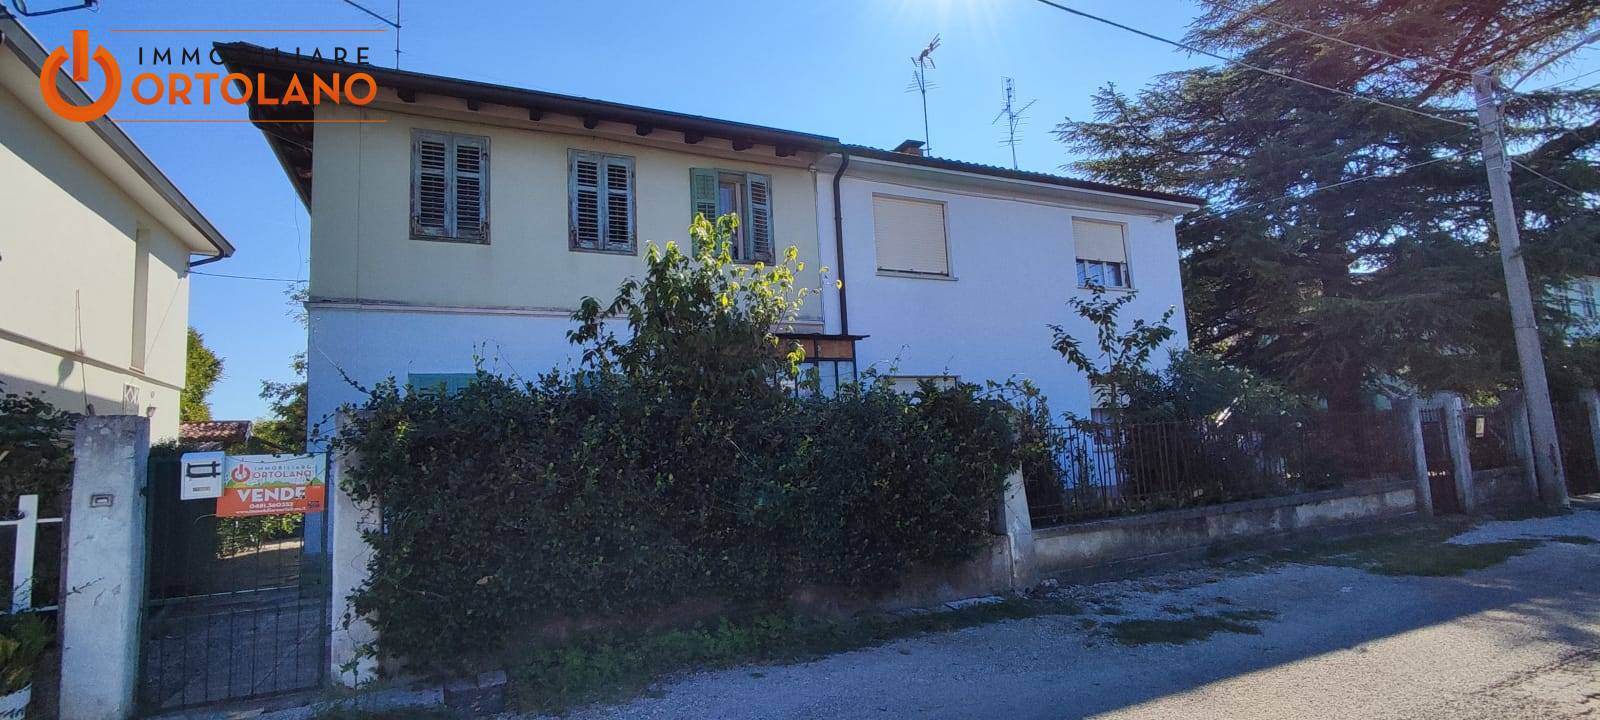 Appartamento in vendita a Ronchi dei Legionari, 2 locali, prezzo € 60.000 | PortaleAgenzieImmobiliari.it